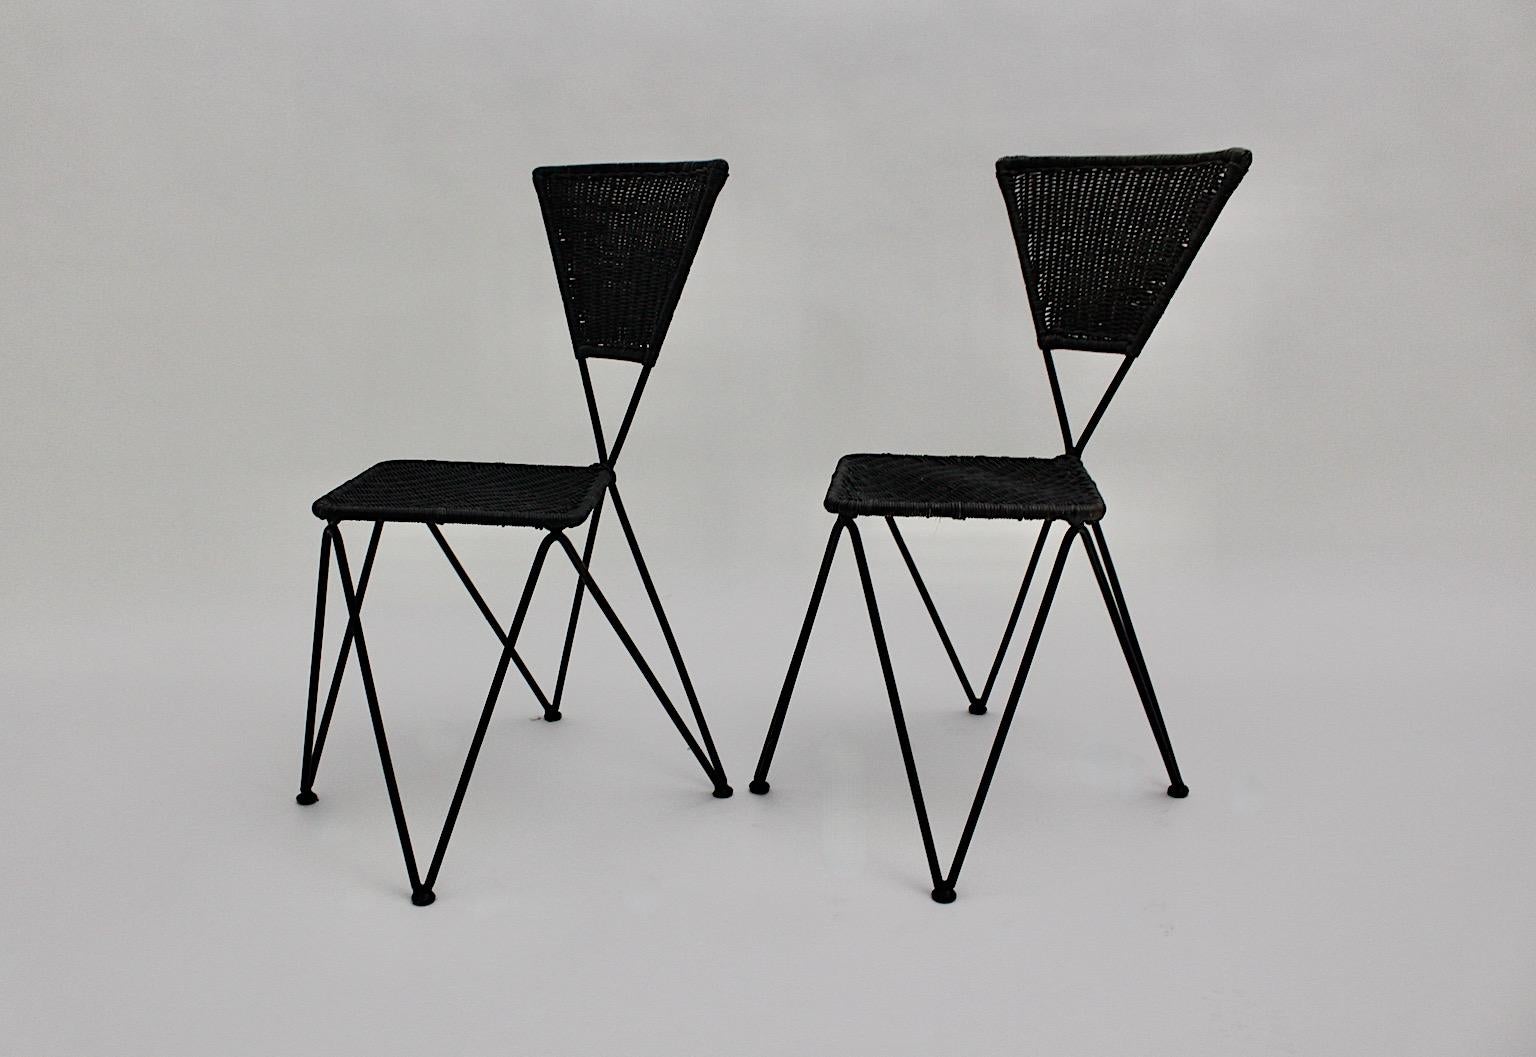 Metallgeflecht Vintage Esszimmerstühle oder Terrassenstühle Duo oder 2er-Set entworfen von Karl Fostel Erben und ausgeführt von Sonett, Wien, um 1950.
Das Sitzgestell wurde aus schwarz lackiertem Eisen gefertigt, während die Sitzfläche und die